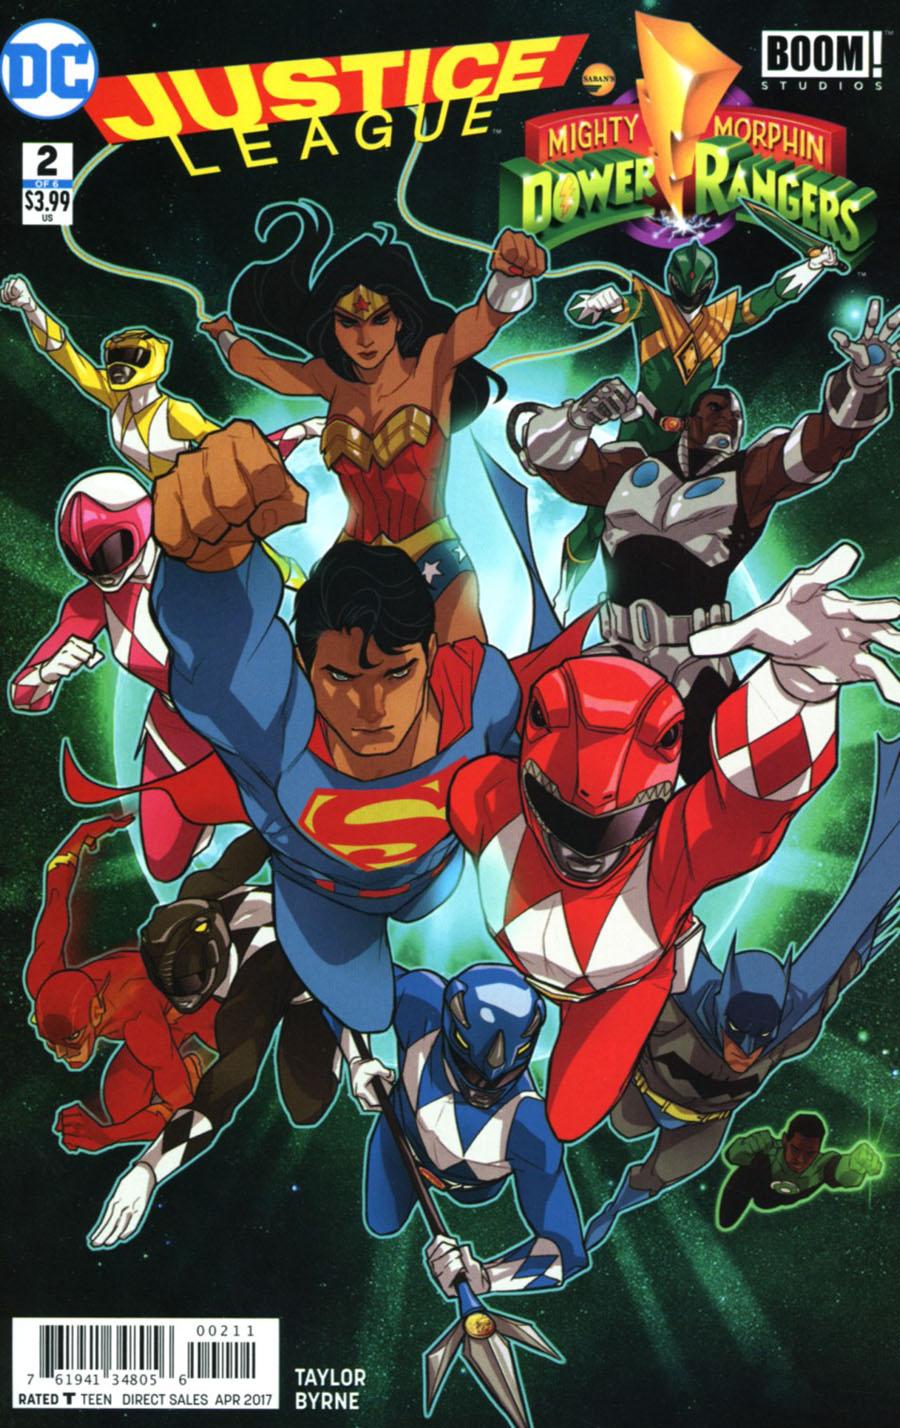 Justice League Power Rangers Vol. 1 #2